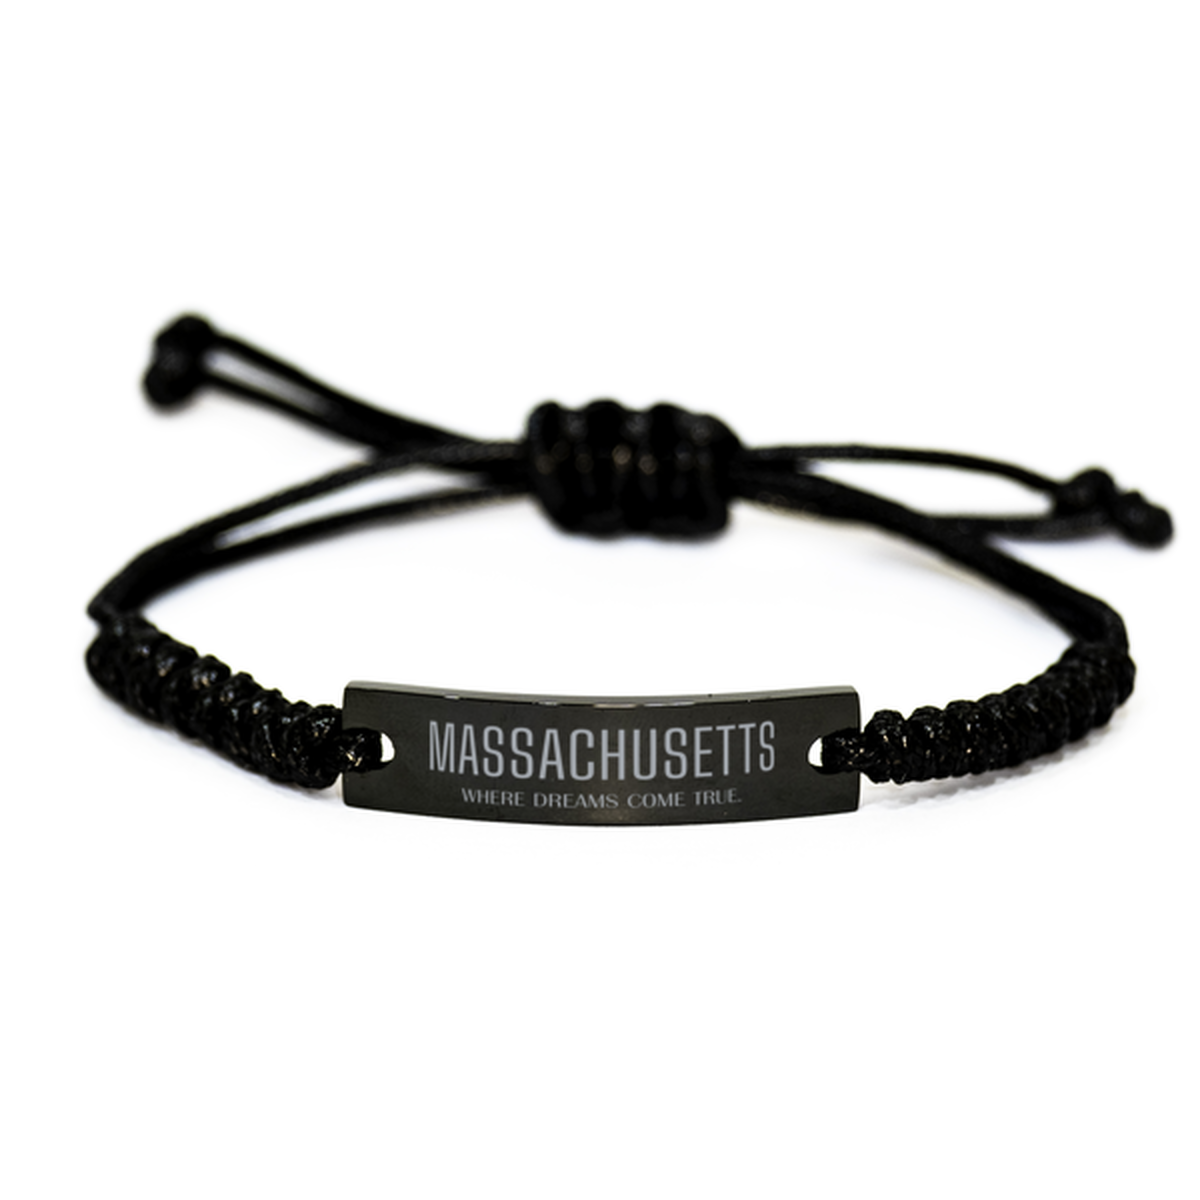 Love Massachusetts State Black Rope Bracelet, Massachusetts Where dreams come true, Birthday Inspirational Gifts For Massachusetts Men, Women, Friends